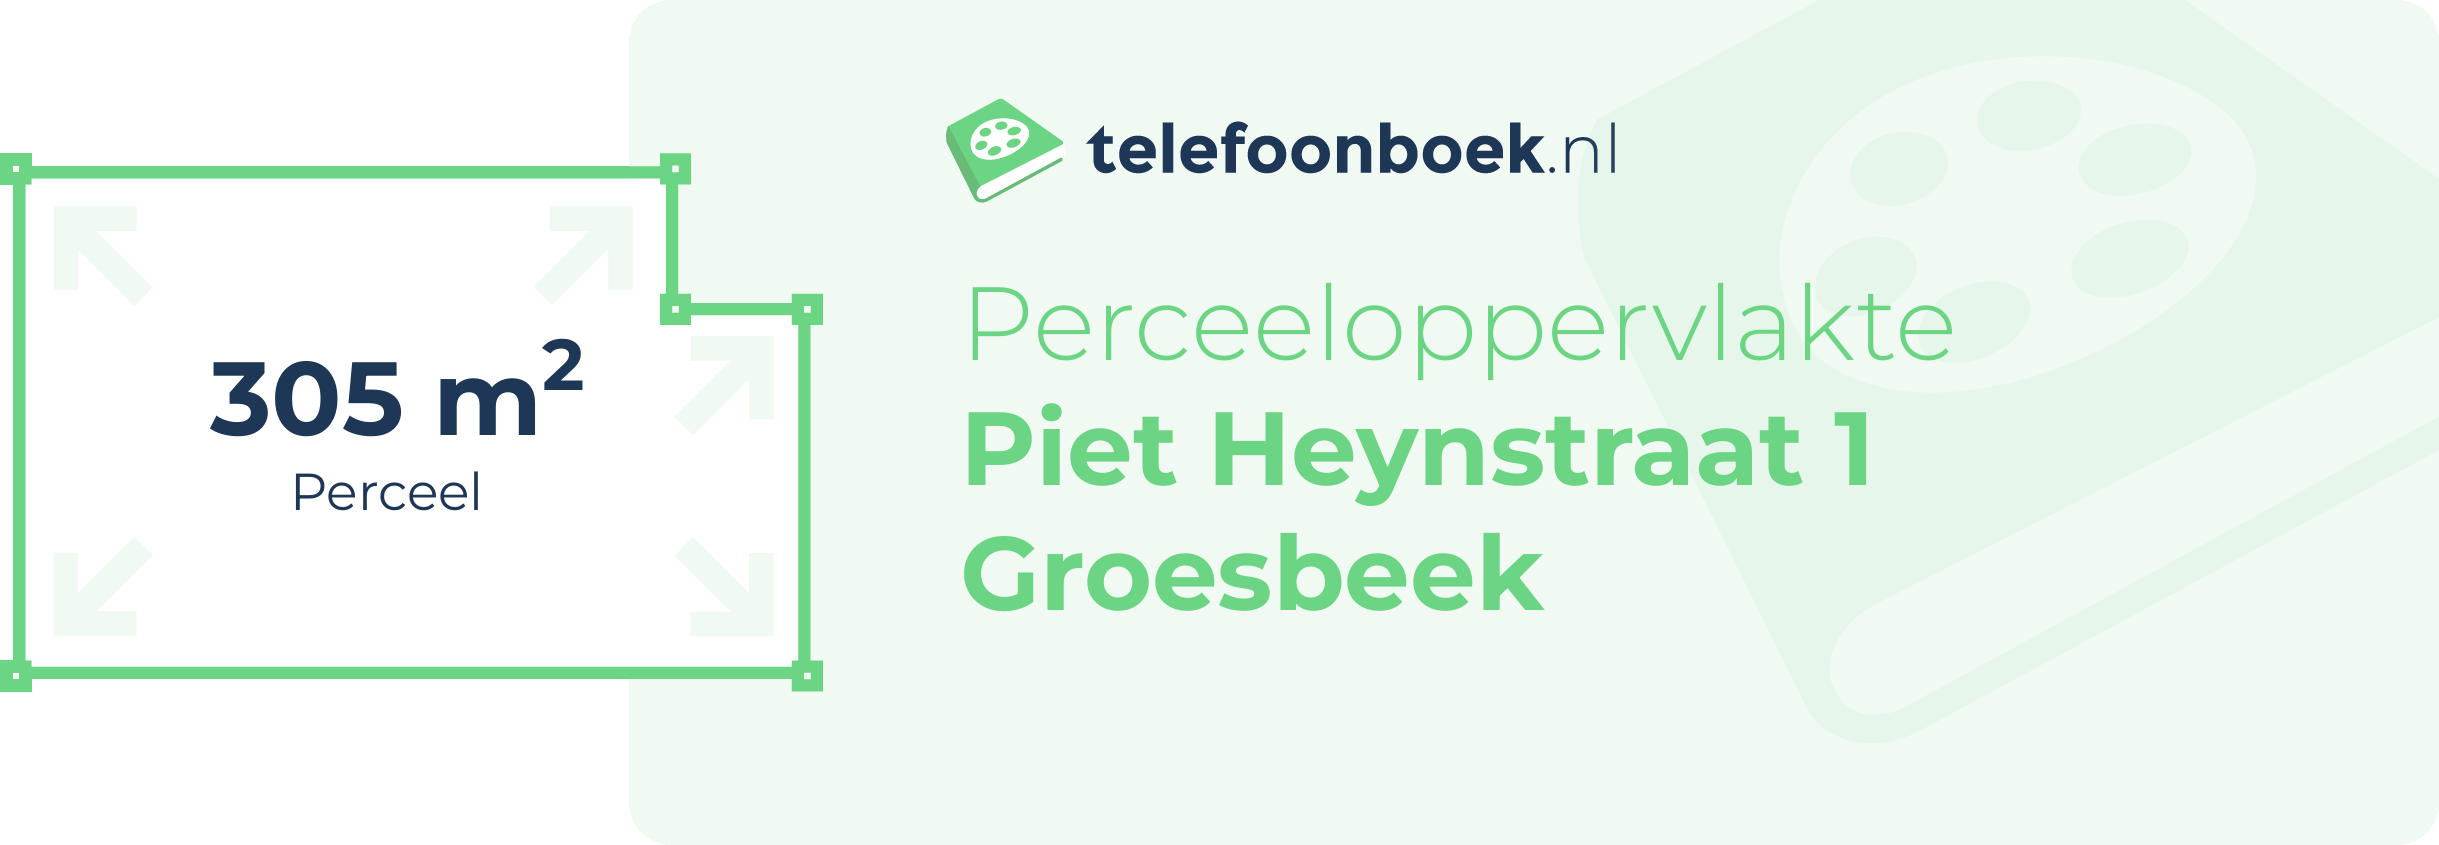 Perceeloppervlakte Piet Heynstraat 1 Groesbeek